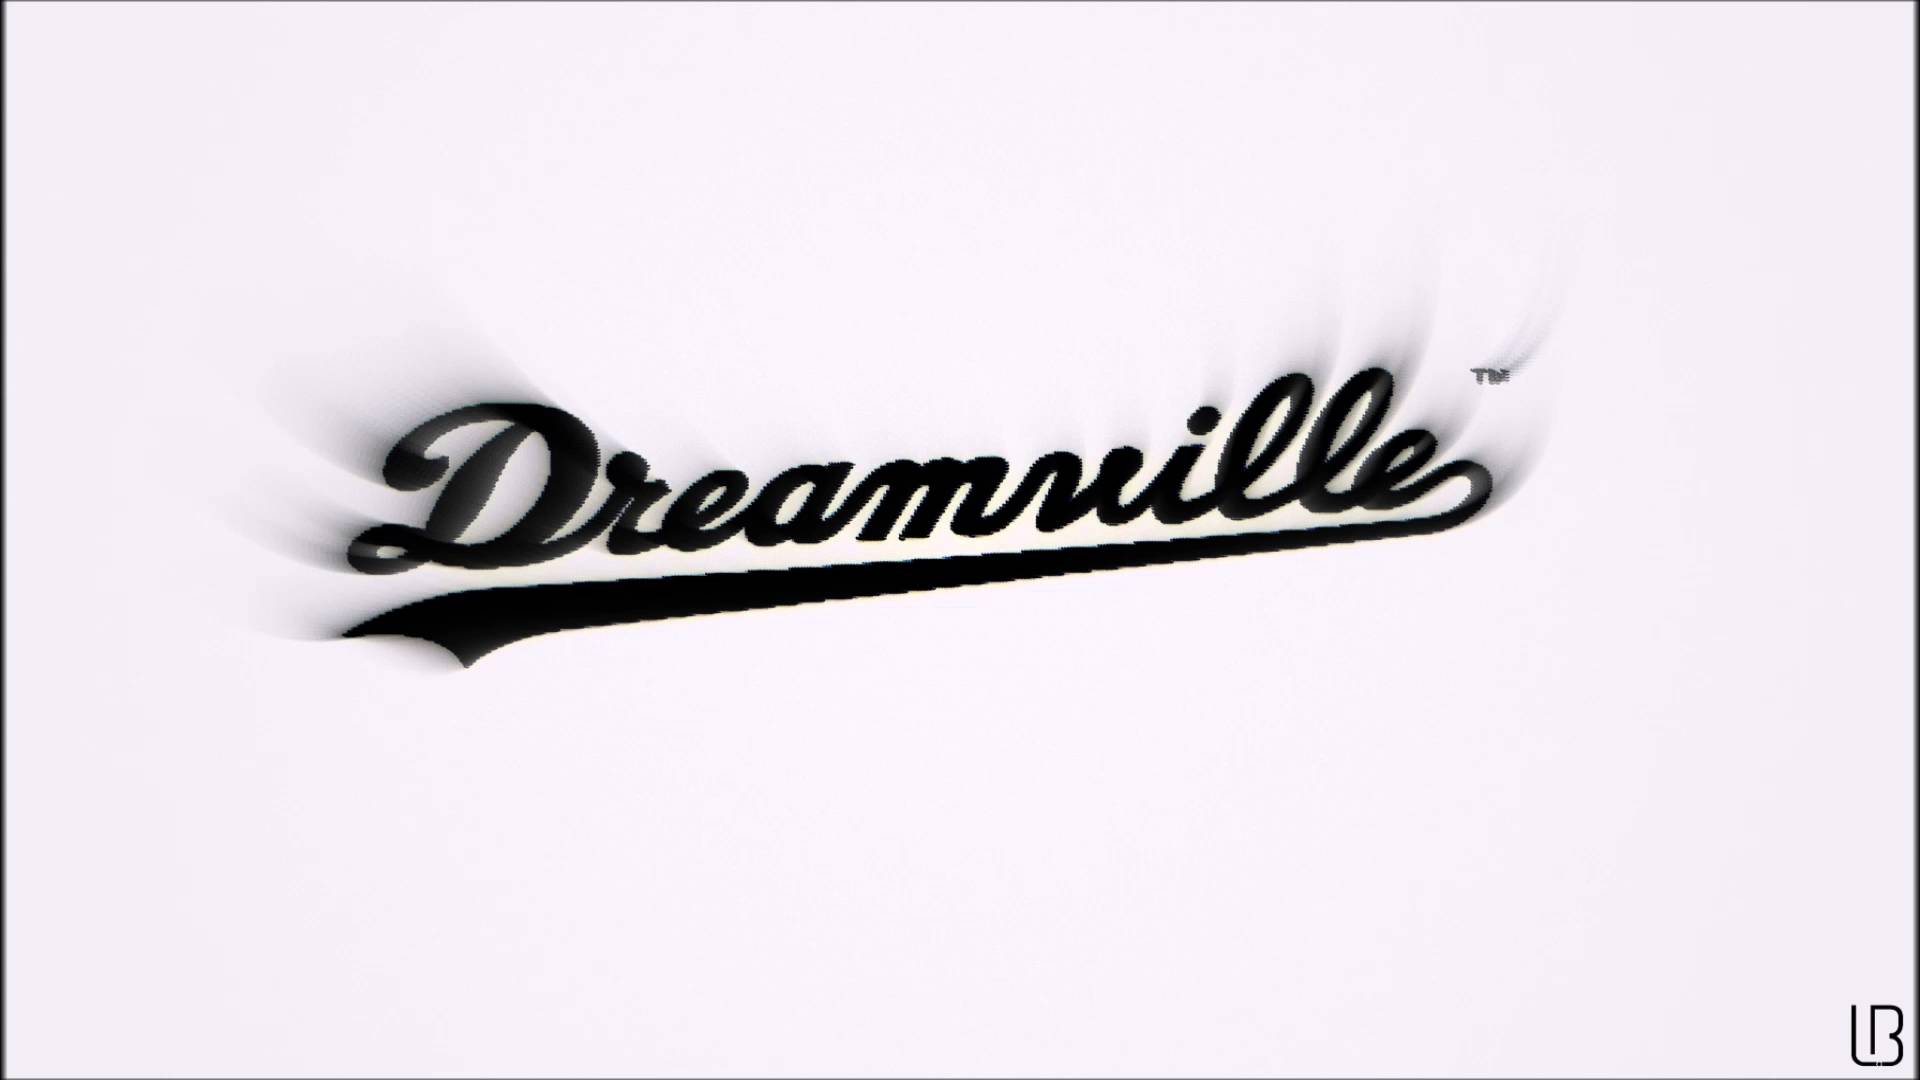 DreamVille Wallpaper Free .wallpaperaccess.com